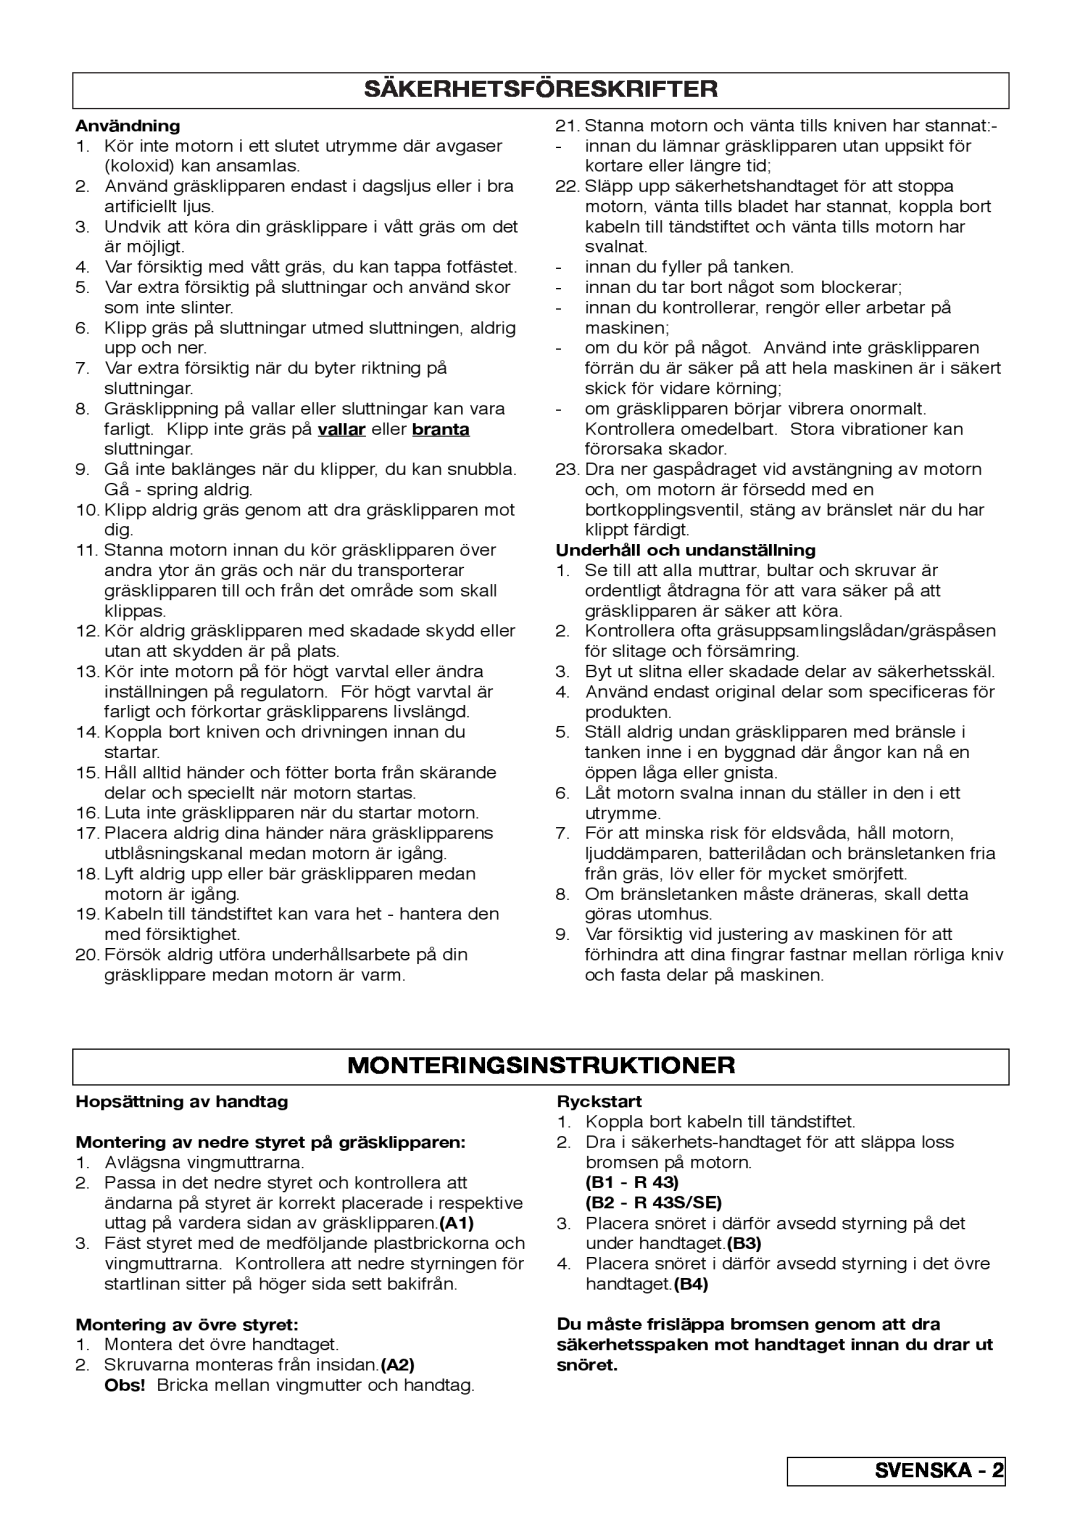 Husqvarna R 43SE manual Säkerhetsföreskrifter, Monteringsinstruktioner 